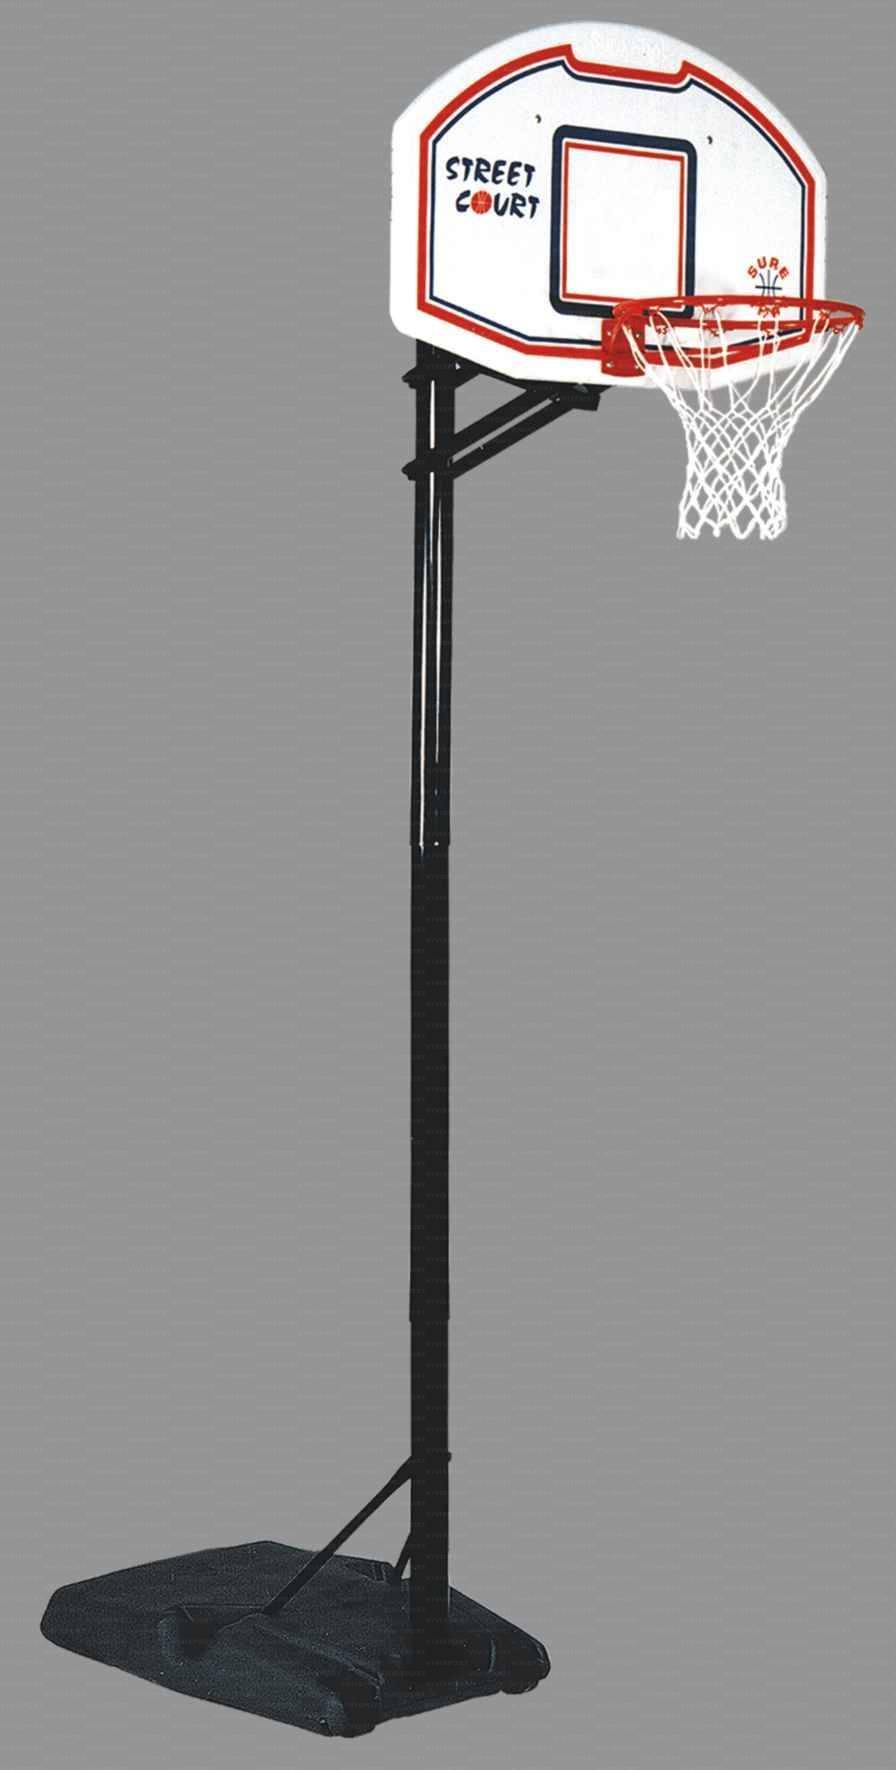 Mezzo impianto basket/minibasket con zavorra riempibile nuovo sistema a scatto per posizionamento altezza tabellone mod. Los Angeles.